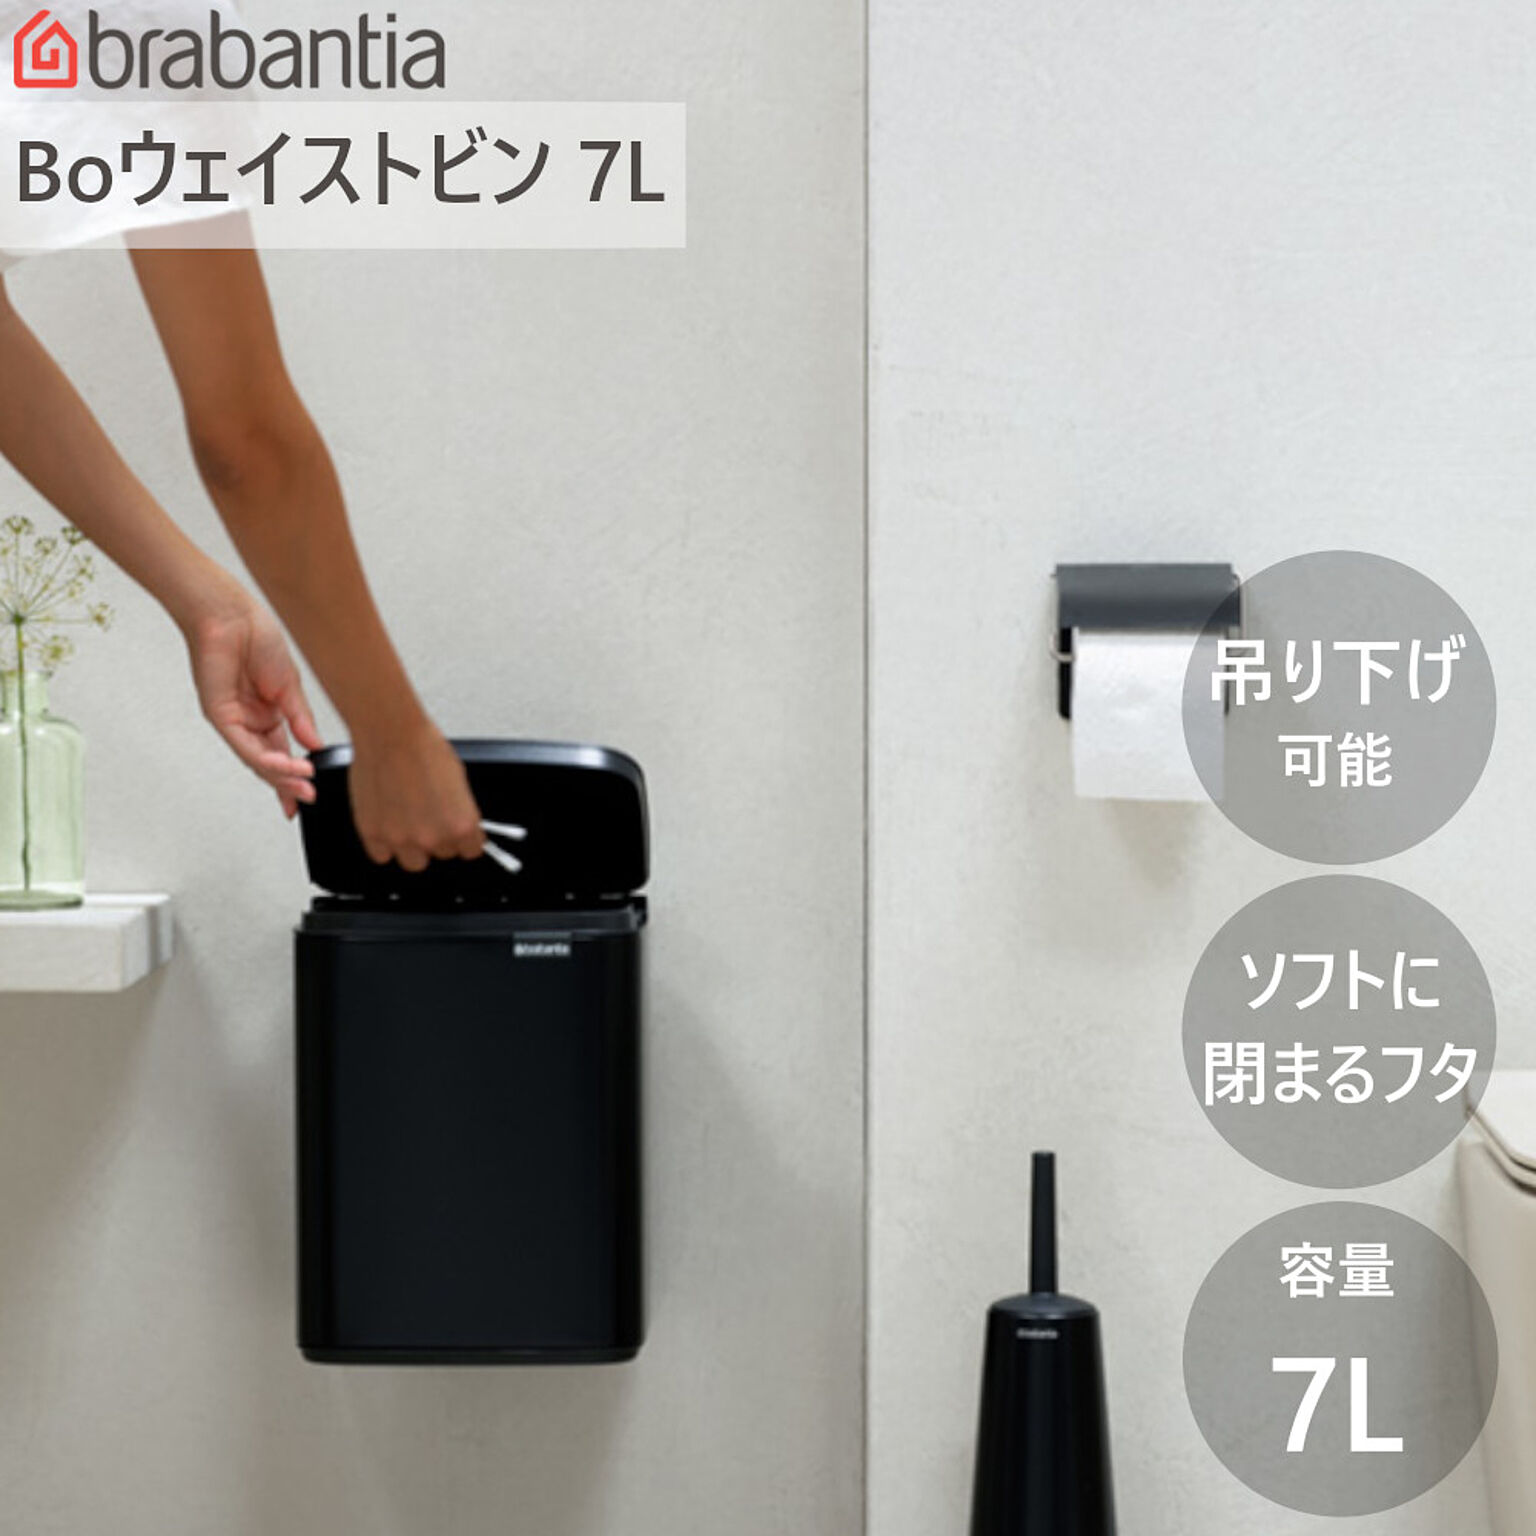 ダストボックス ゴミ箱 Bo ウエイストビン 7L ブラバンシア ウェイストビン 洗面 トイレ 手動式 蓋付